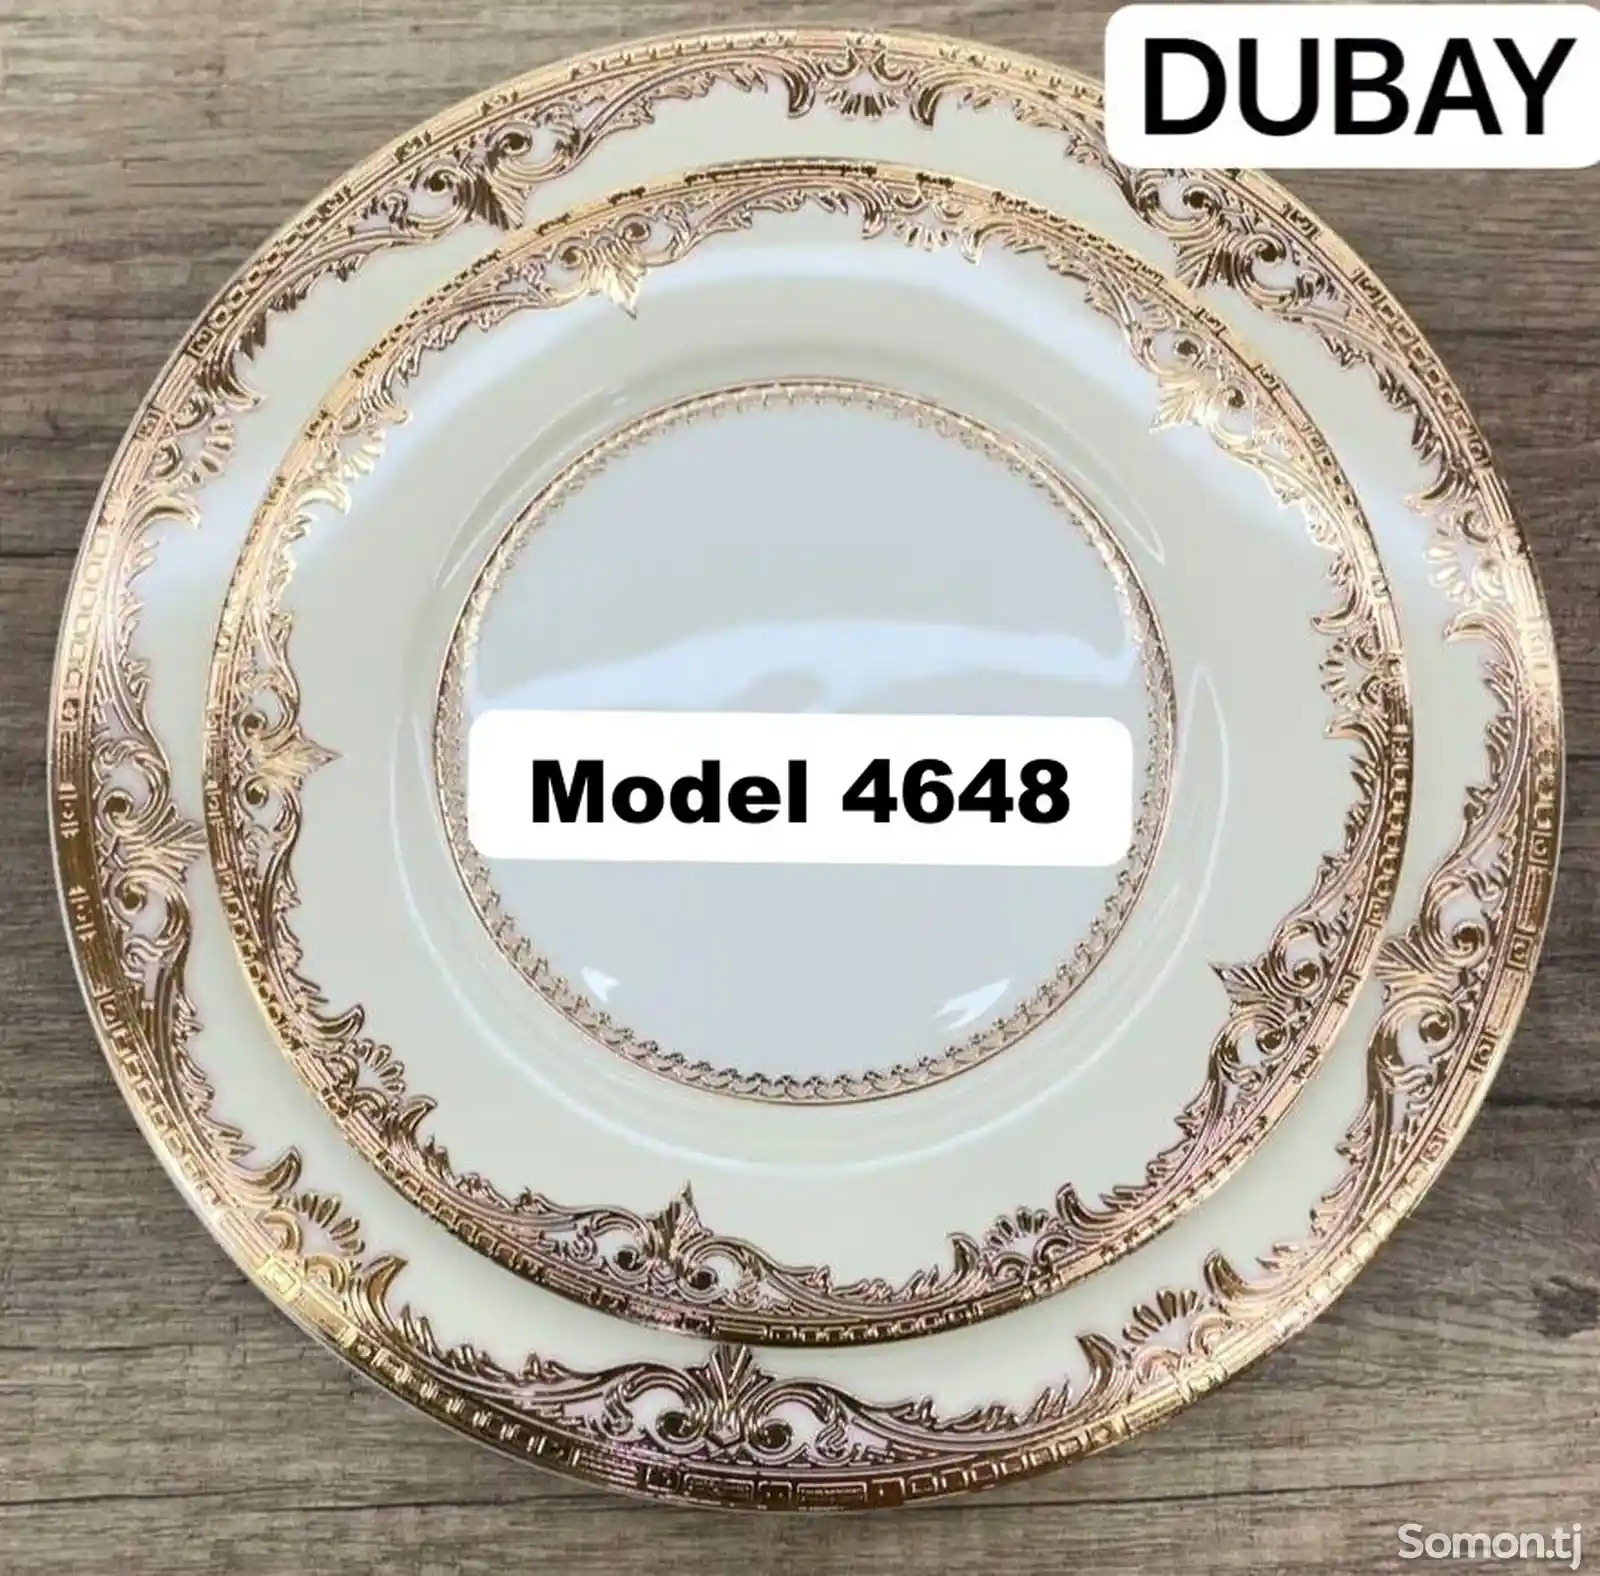 Набор посуды Dubay модель 4648